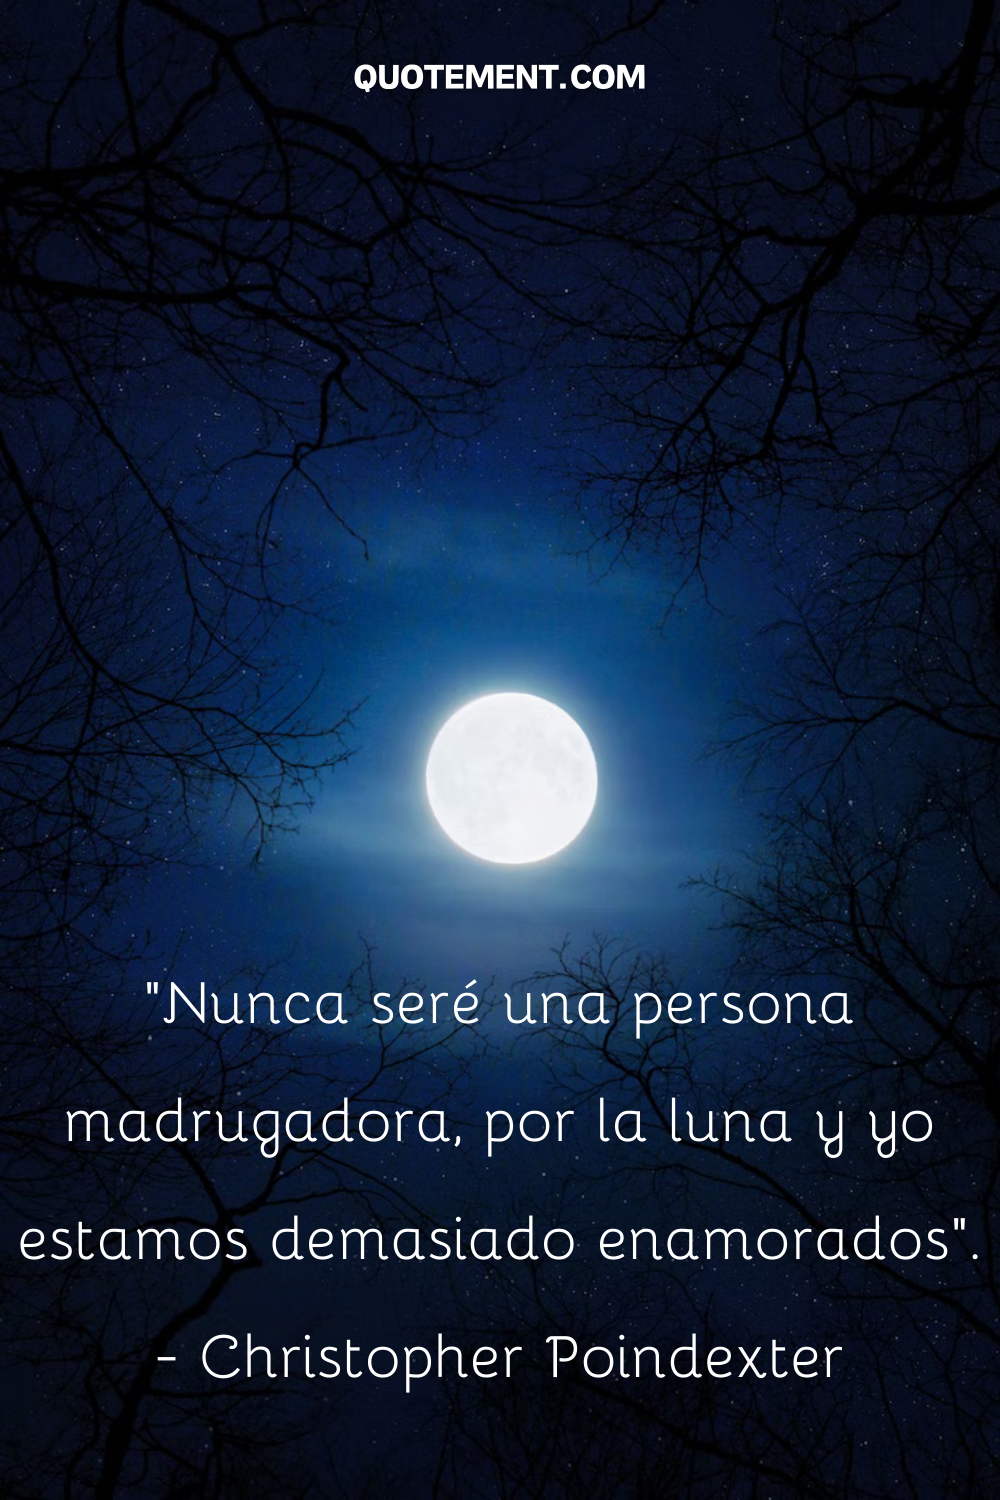 "Nunca seré una persona madrugadora, porque la luna y yo estamos demasiado enamorados". - Christopher Poindexter